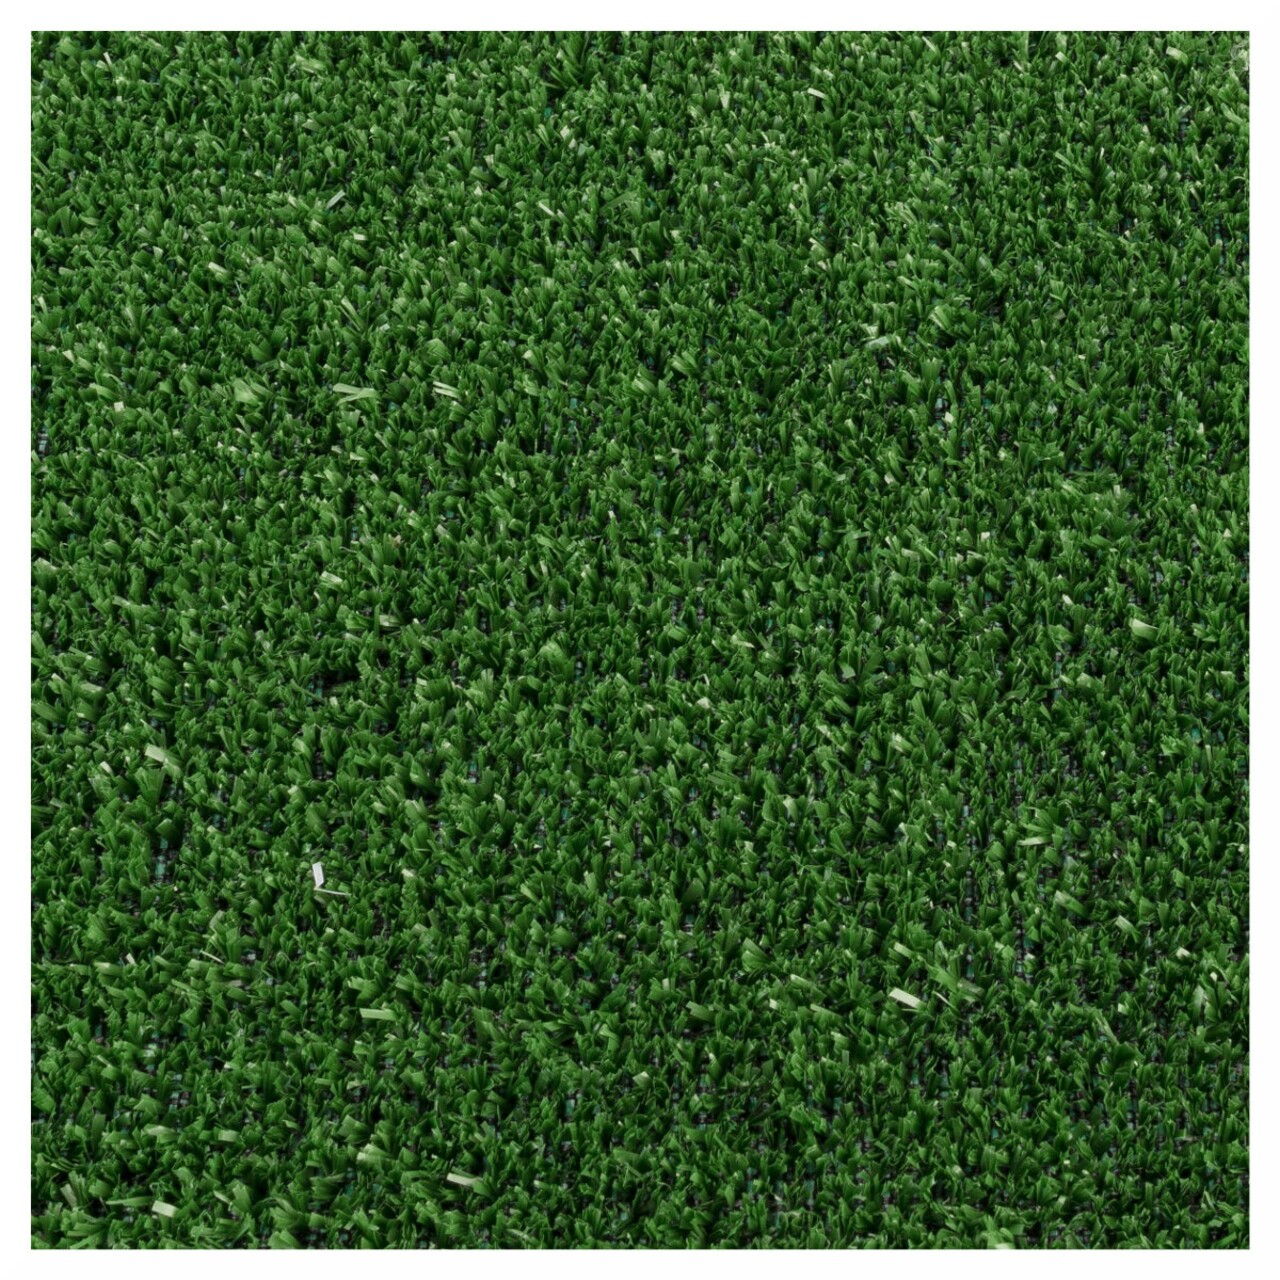 Gazon Artificial Evergreen 5 Mm, Decorino, 100x133 Cm, Polipropilena, Verde